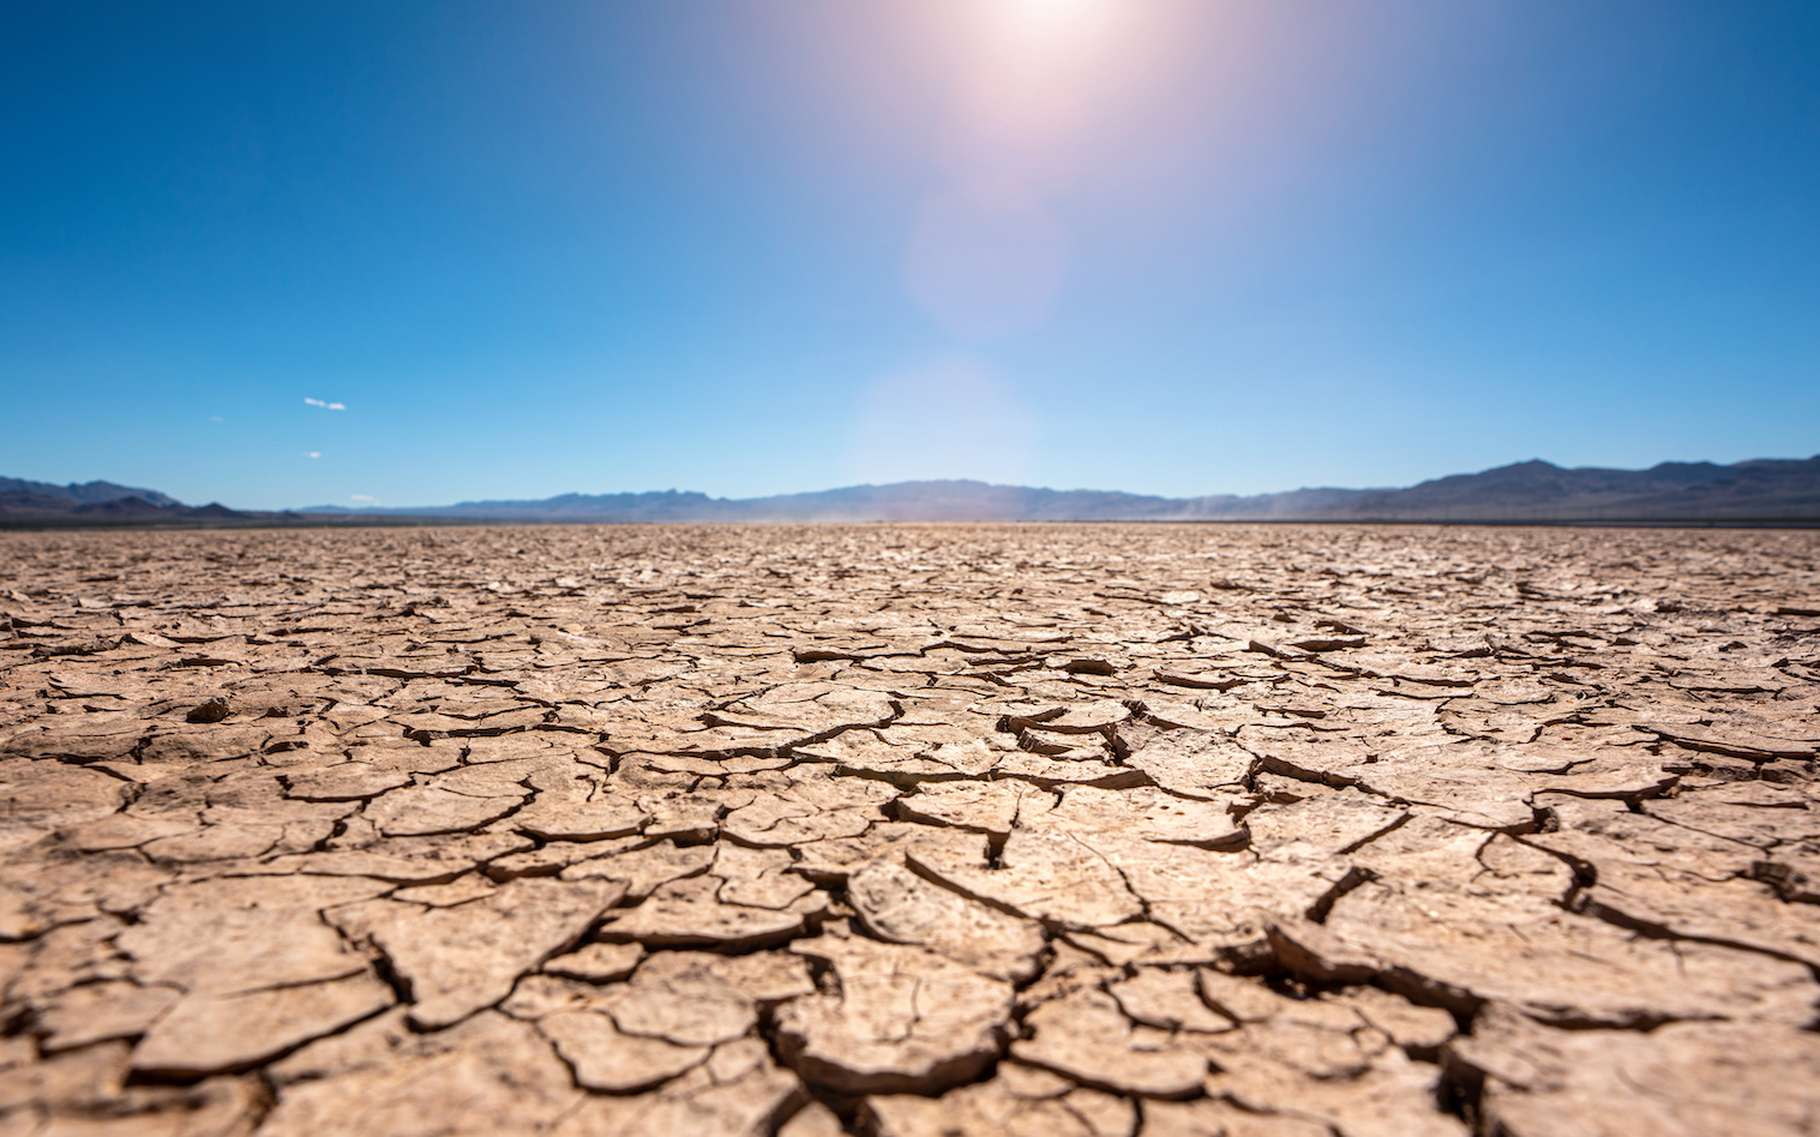 La sécheresse empêche le sol de stocker du carbone